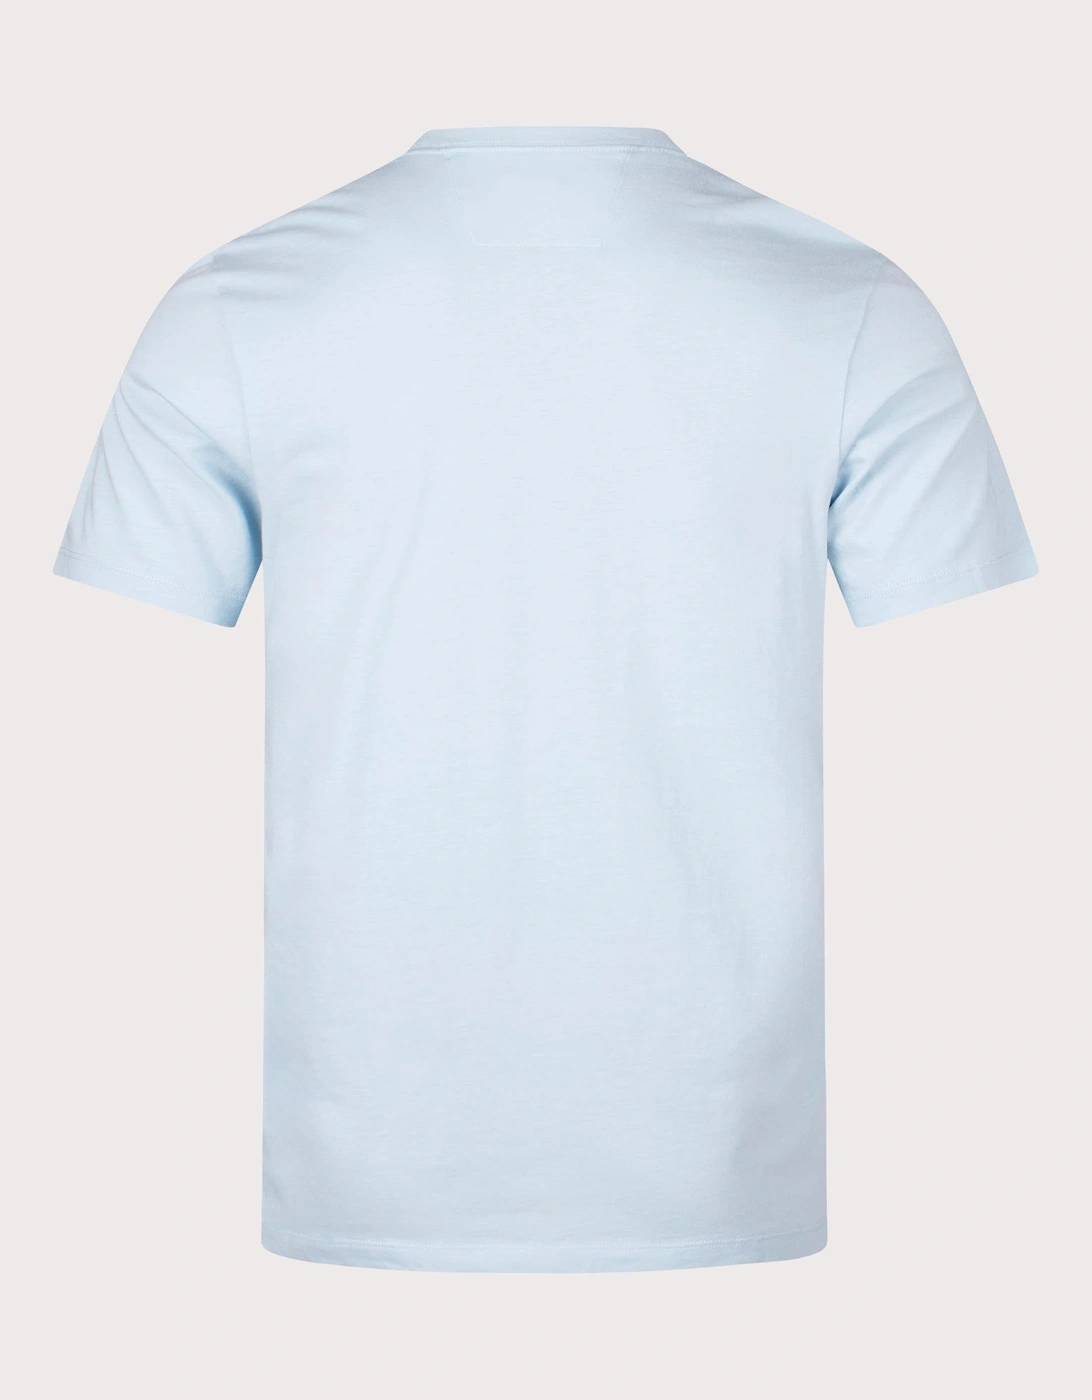 30/1 Jersey British Sailor T-Shirt